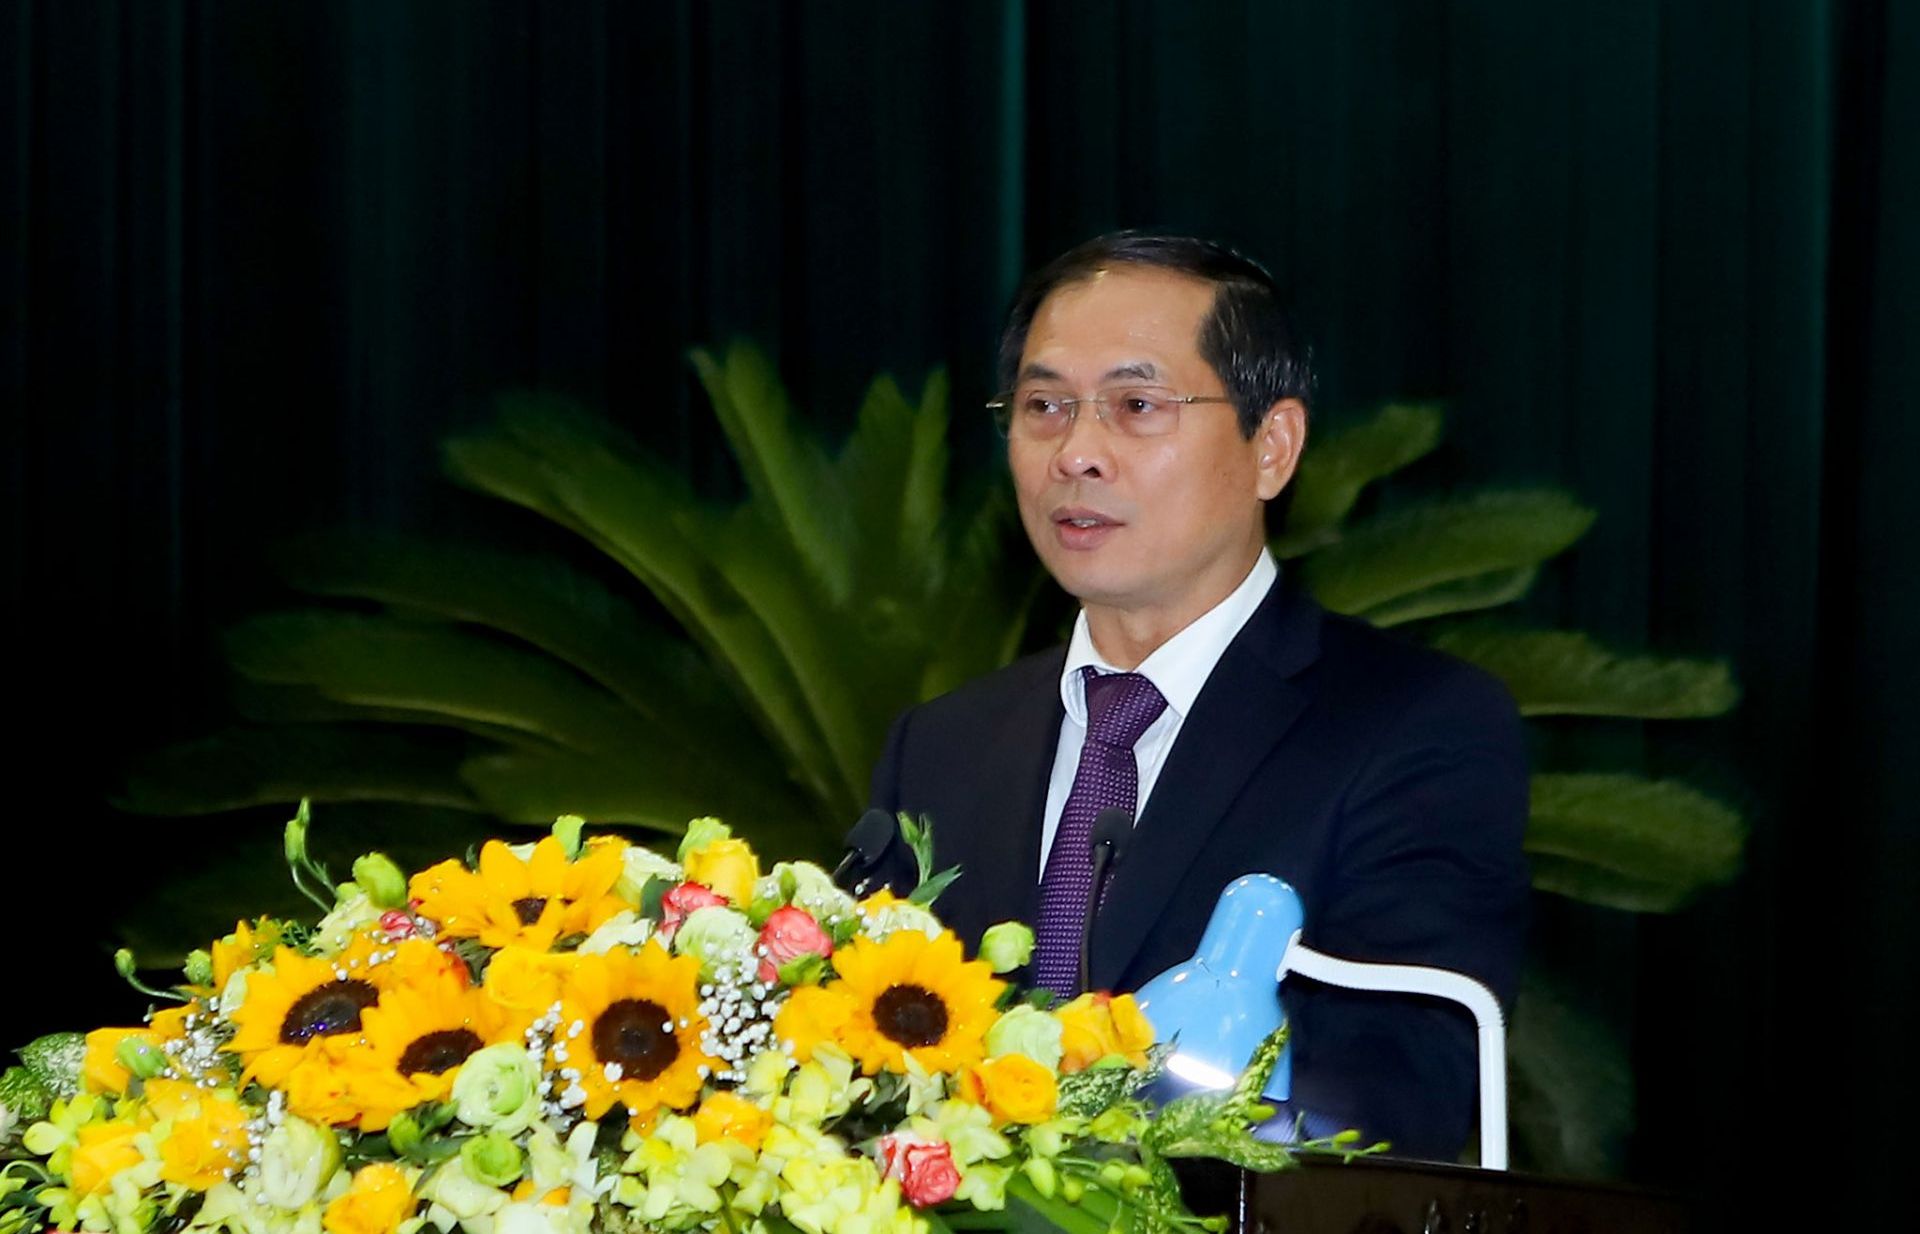 Thứ trưởng Bùi Thanh Sơn tham dự Tổng kết công tác đối ngoại năm 2019 tỉnh Thanh Hóa